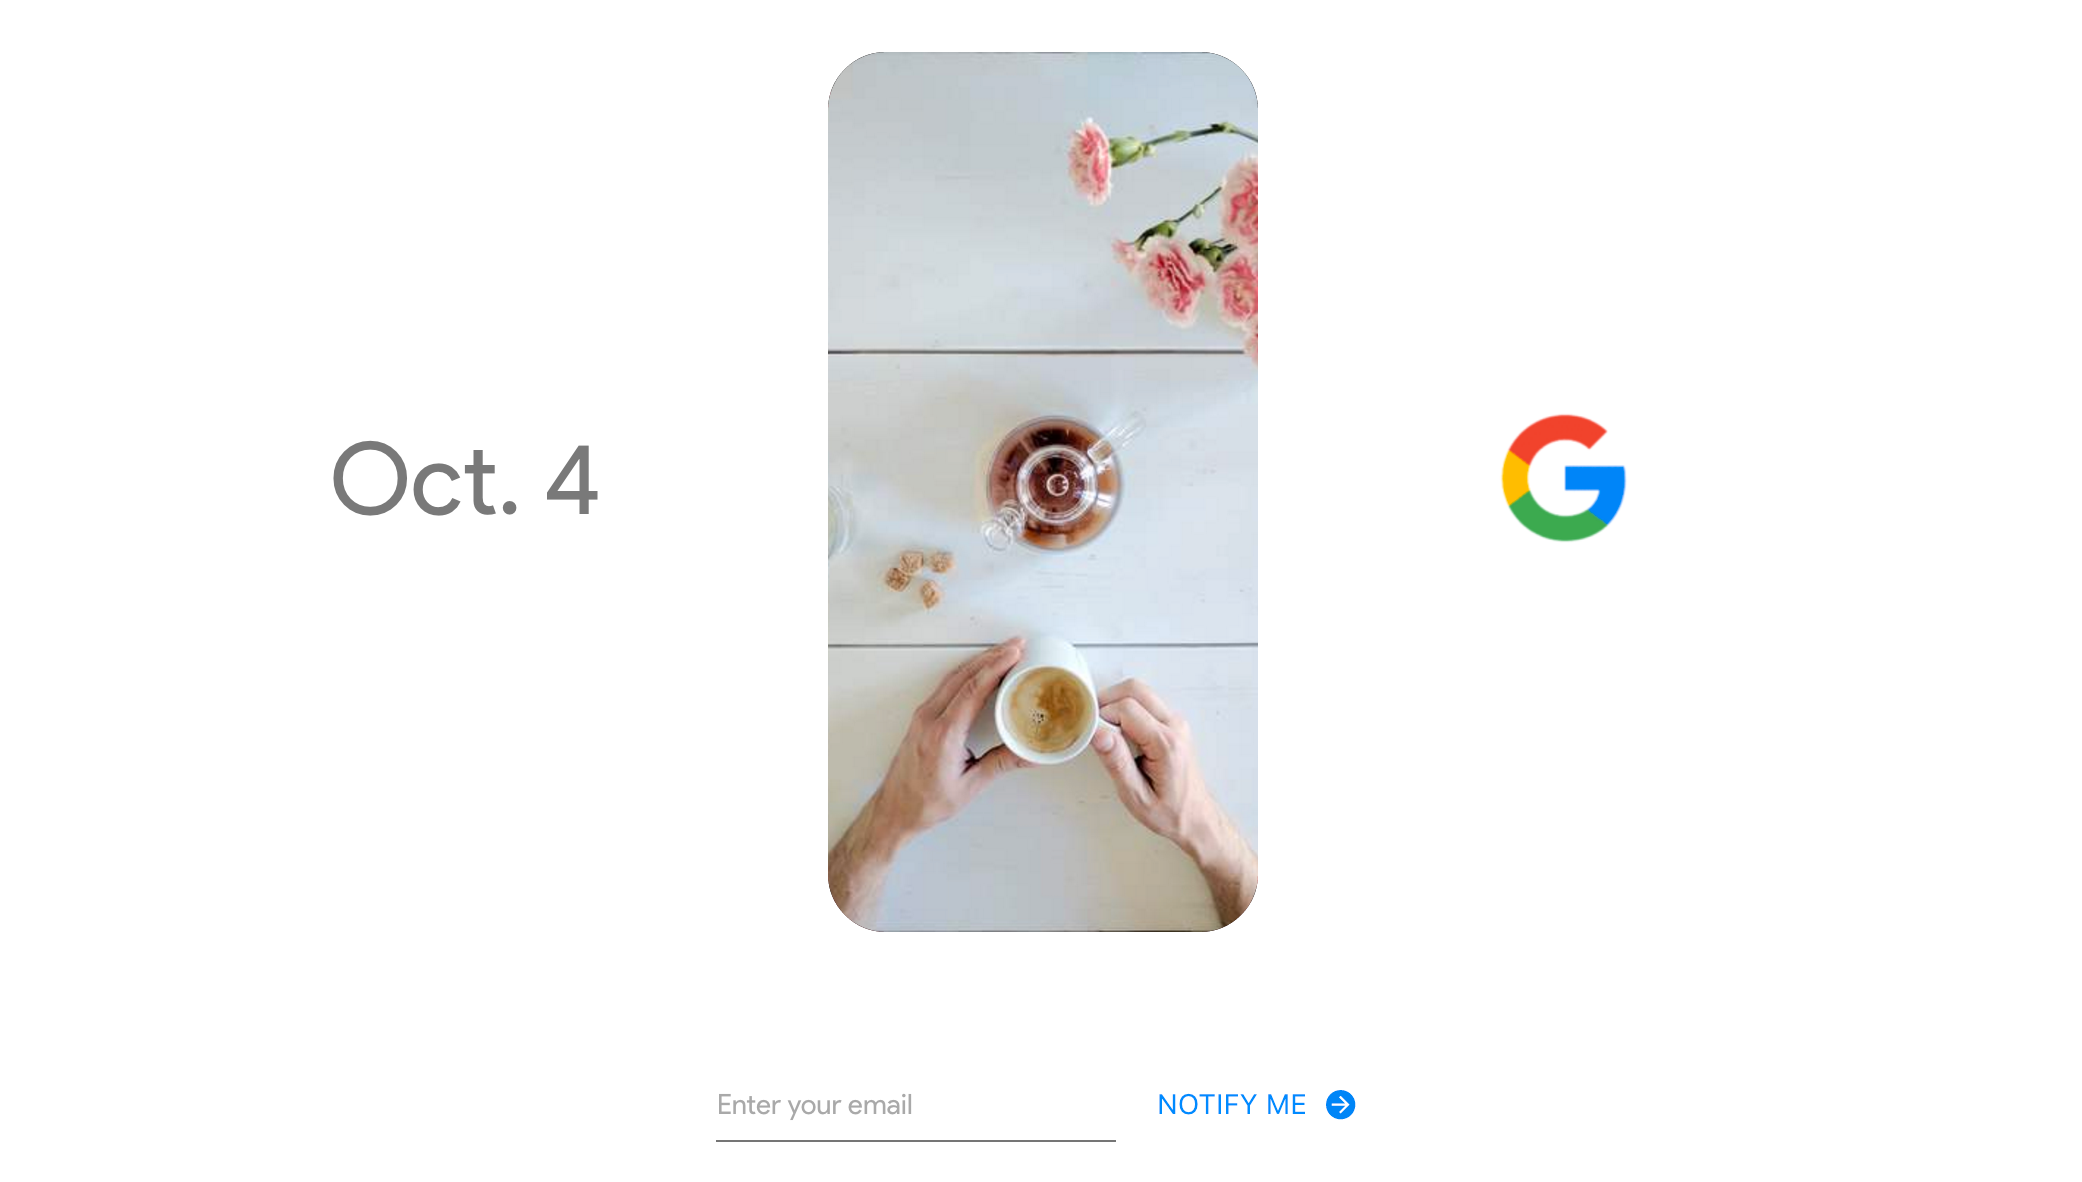 Google har lagt ut dette teaser-bildet til sin lansering 4. oktober.